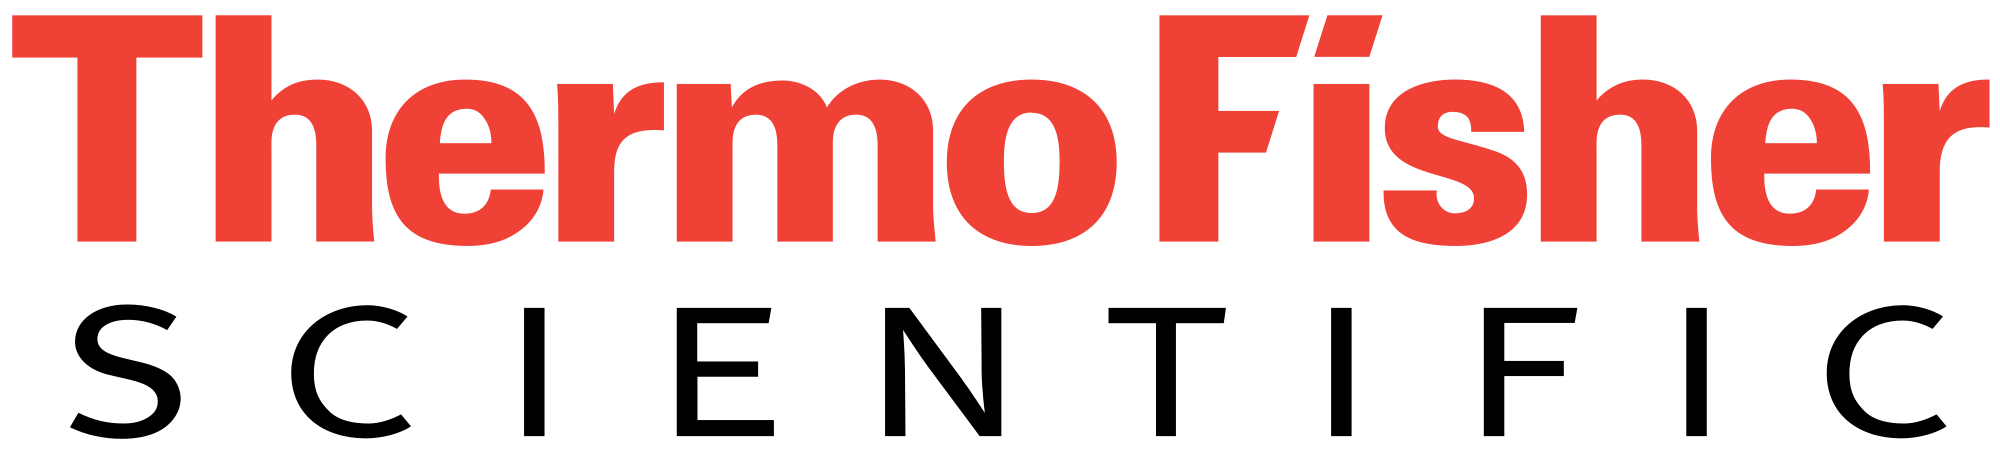 Thermo Fisher Scientific Brand Logo